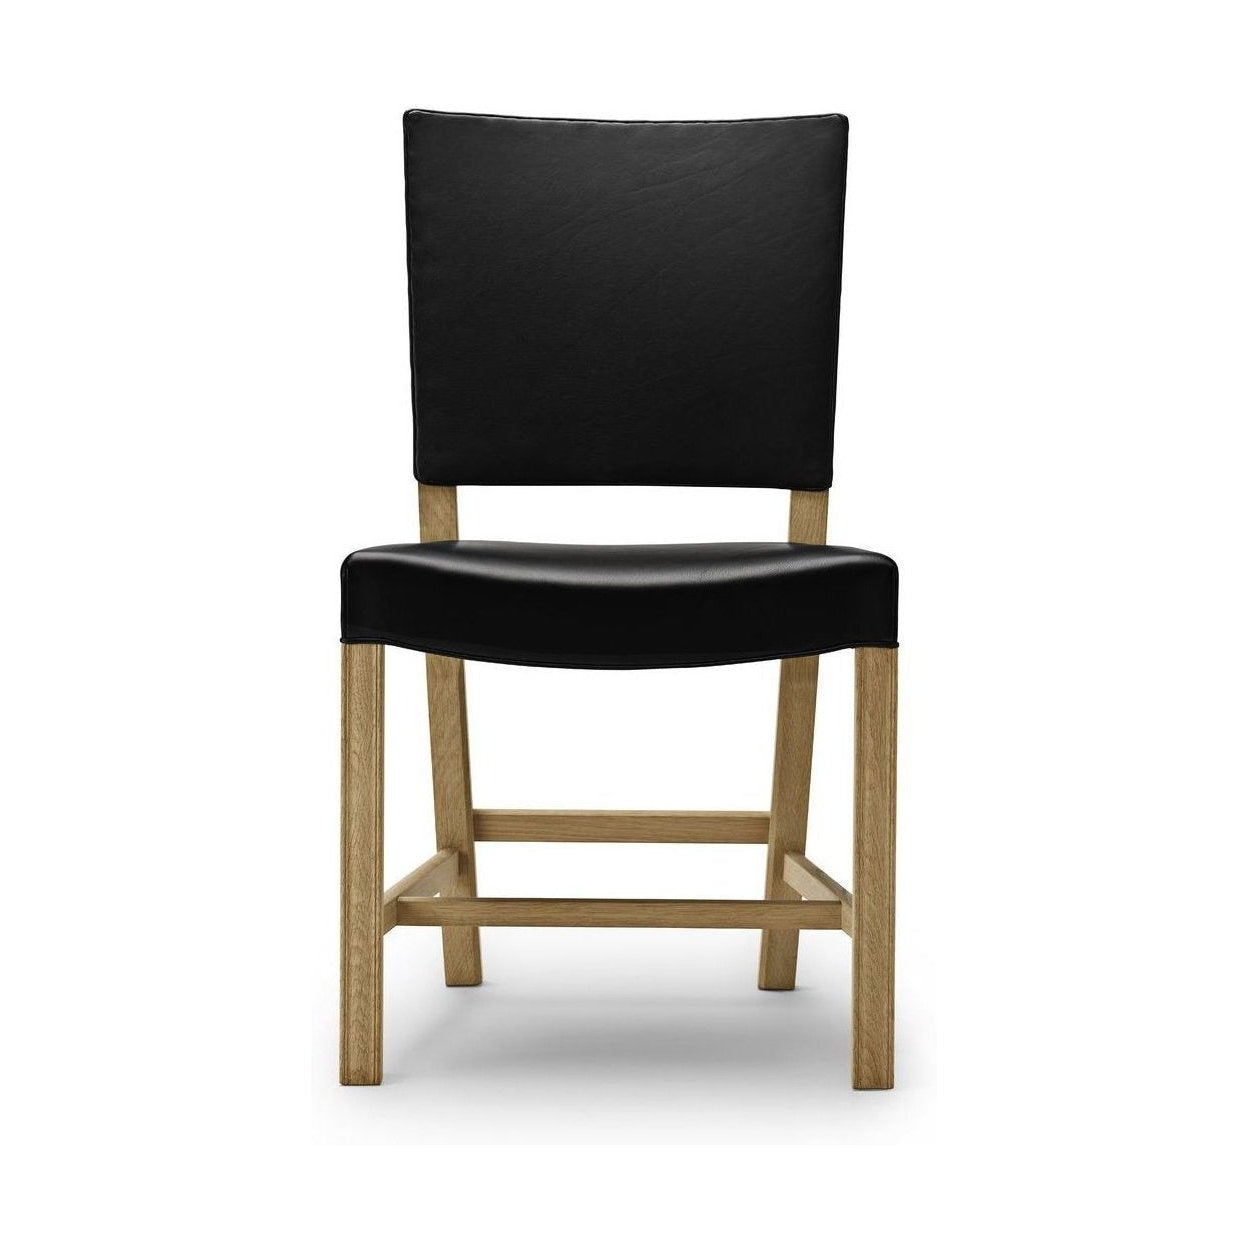 Carl Hansen Den röda stolen, 48 cm